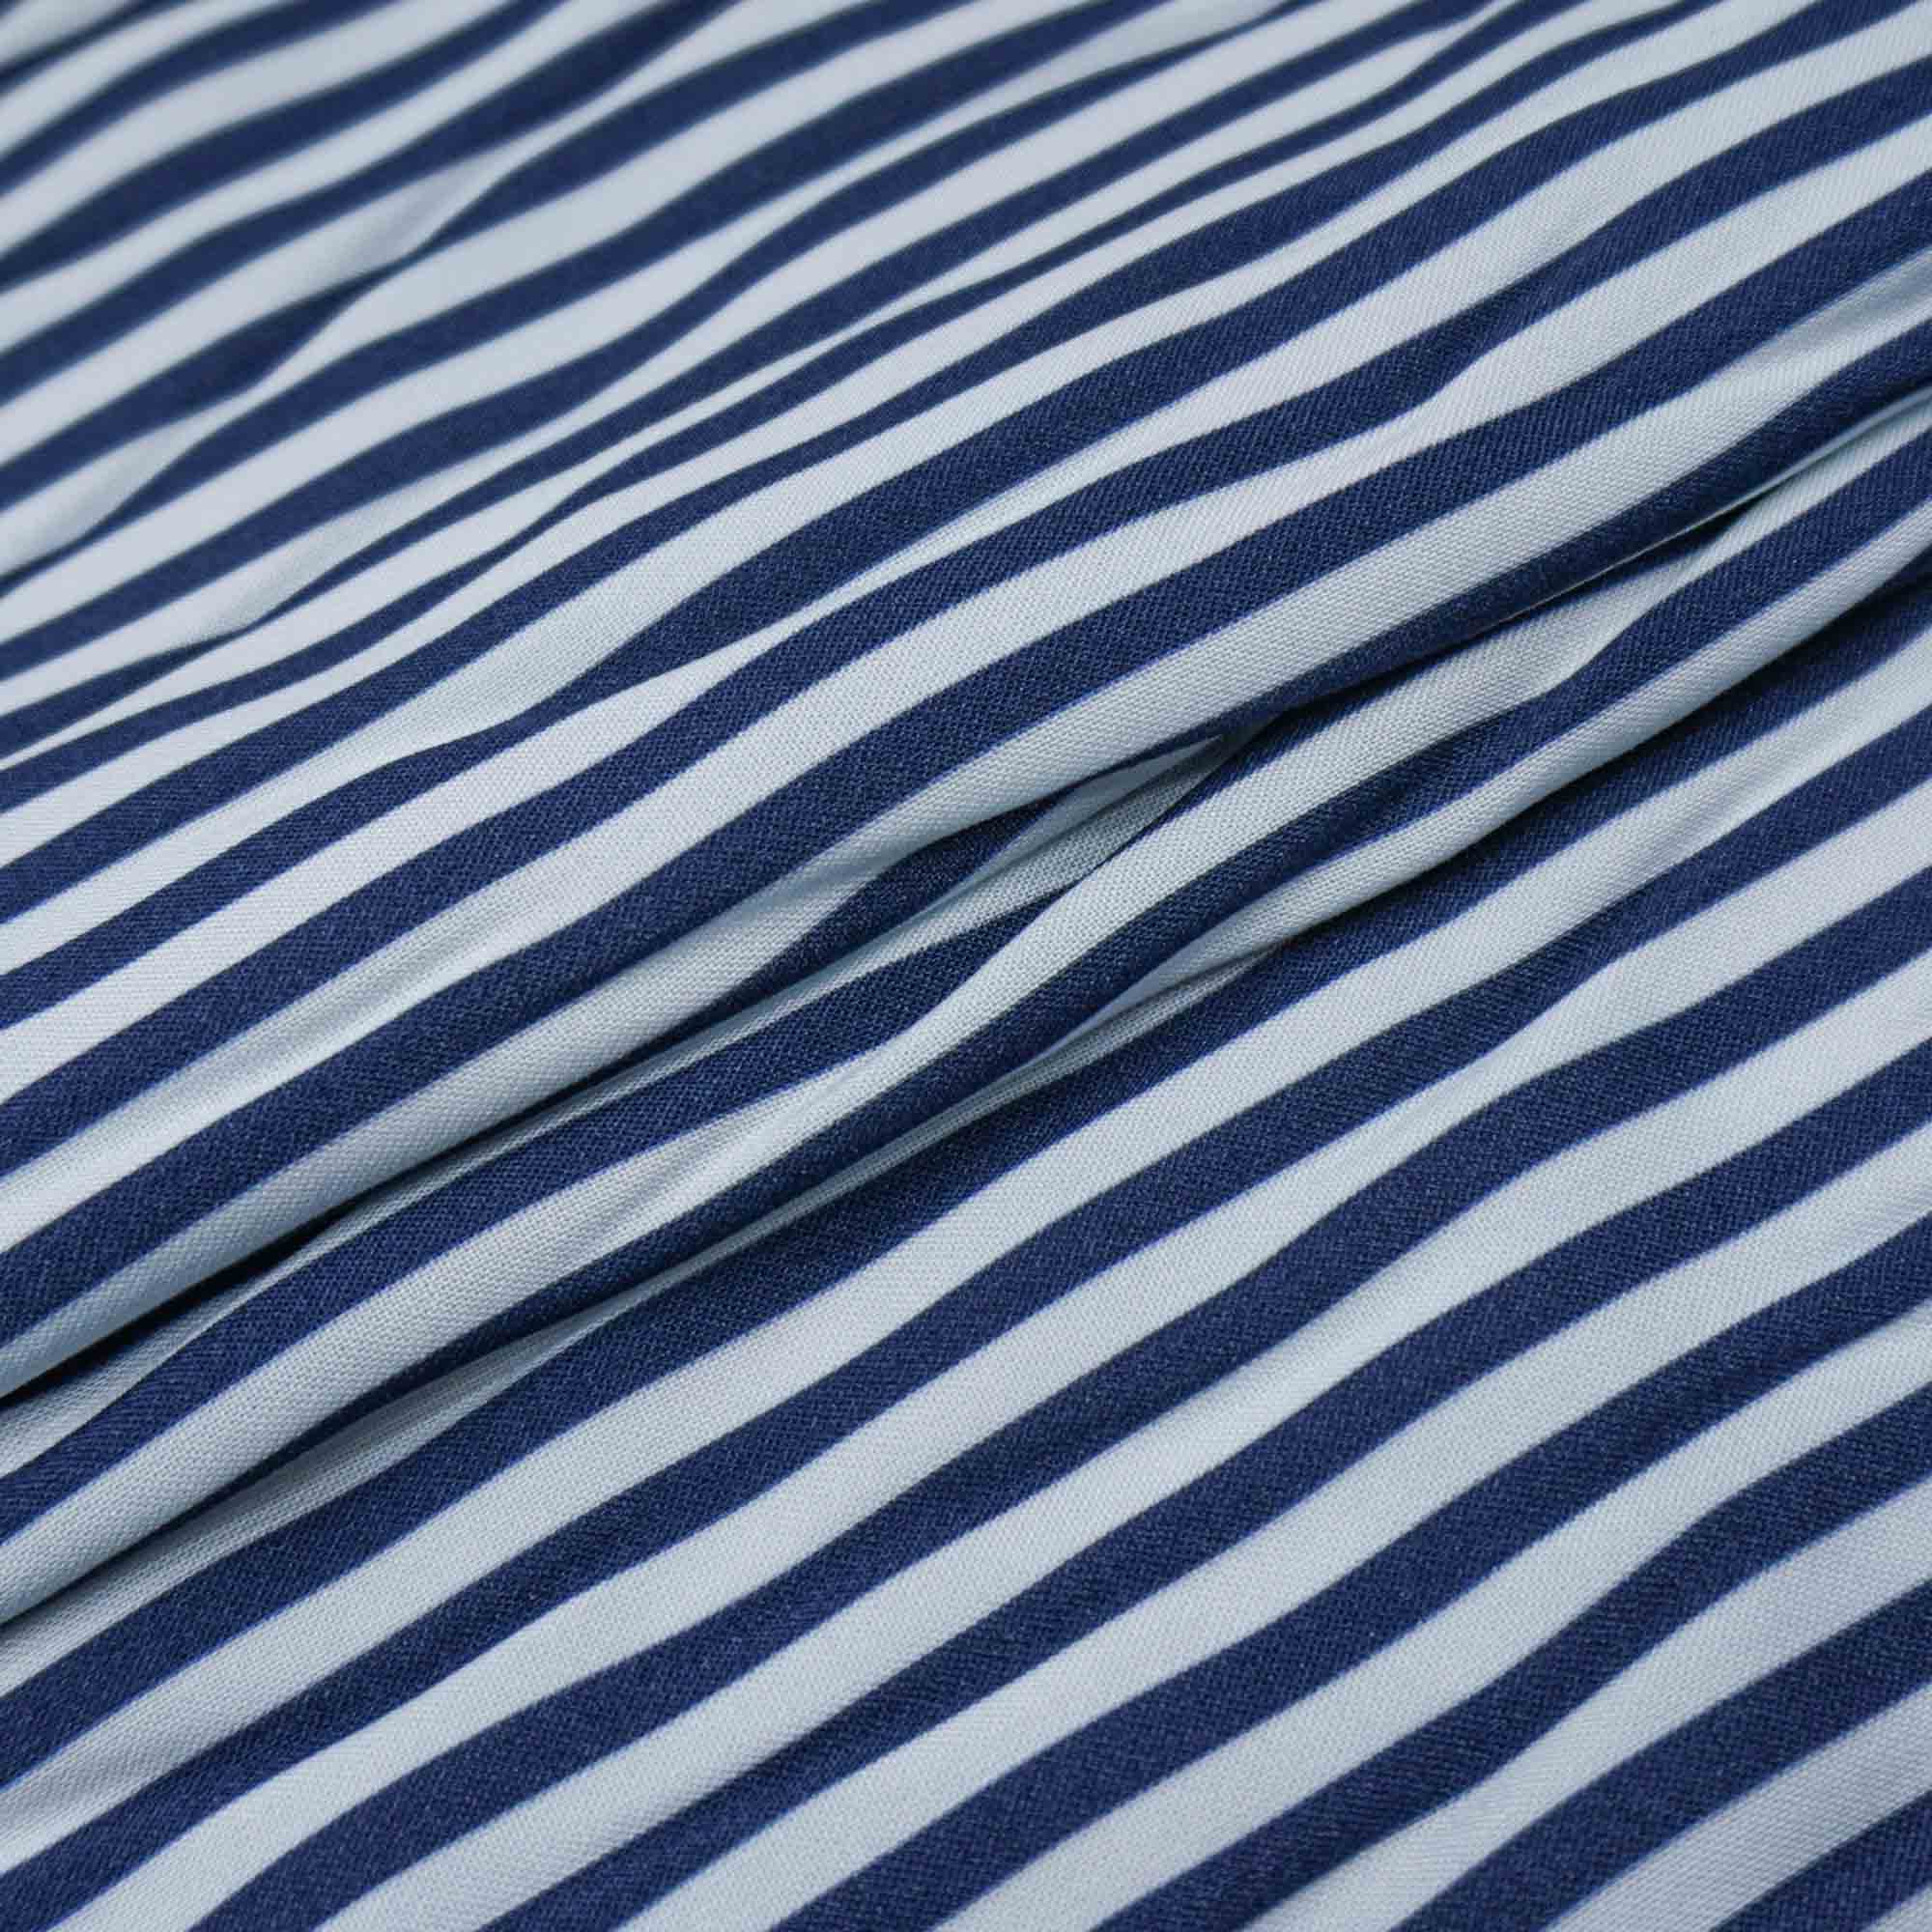 Tecido viscose estampado listras azul marinho/branco (tecido italiano legítimo)